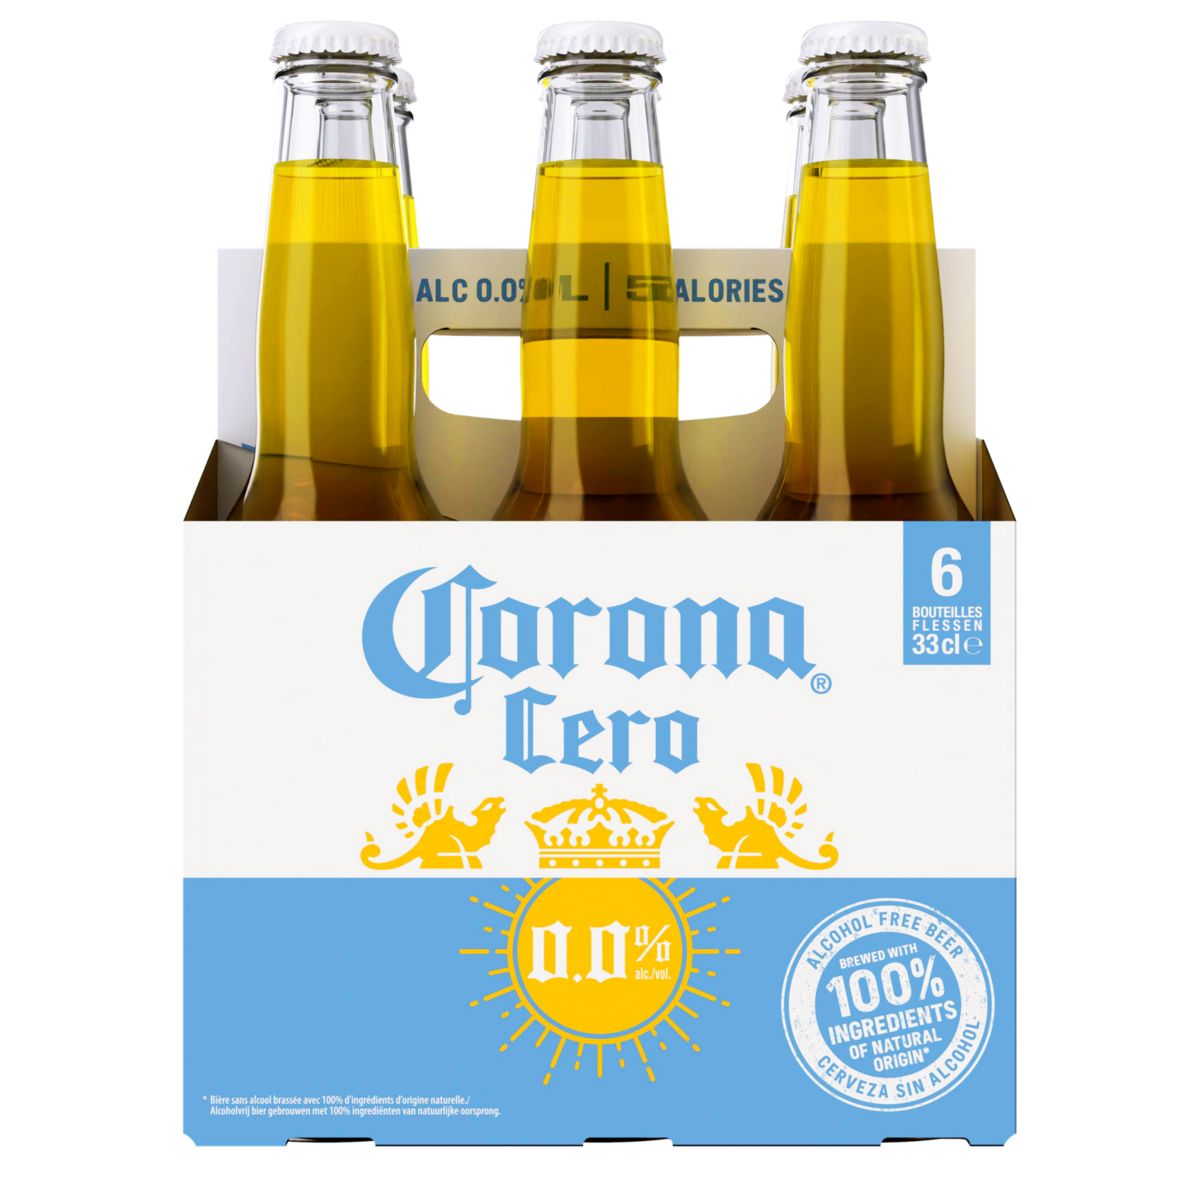 Corona Cero 0.0% Alc. Bouteilles 6 x 33 cl